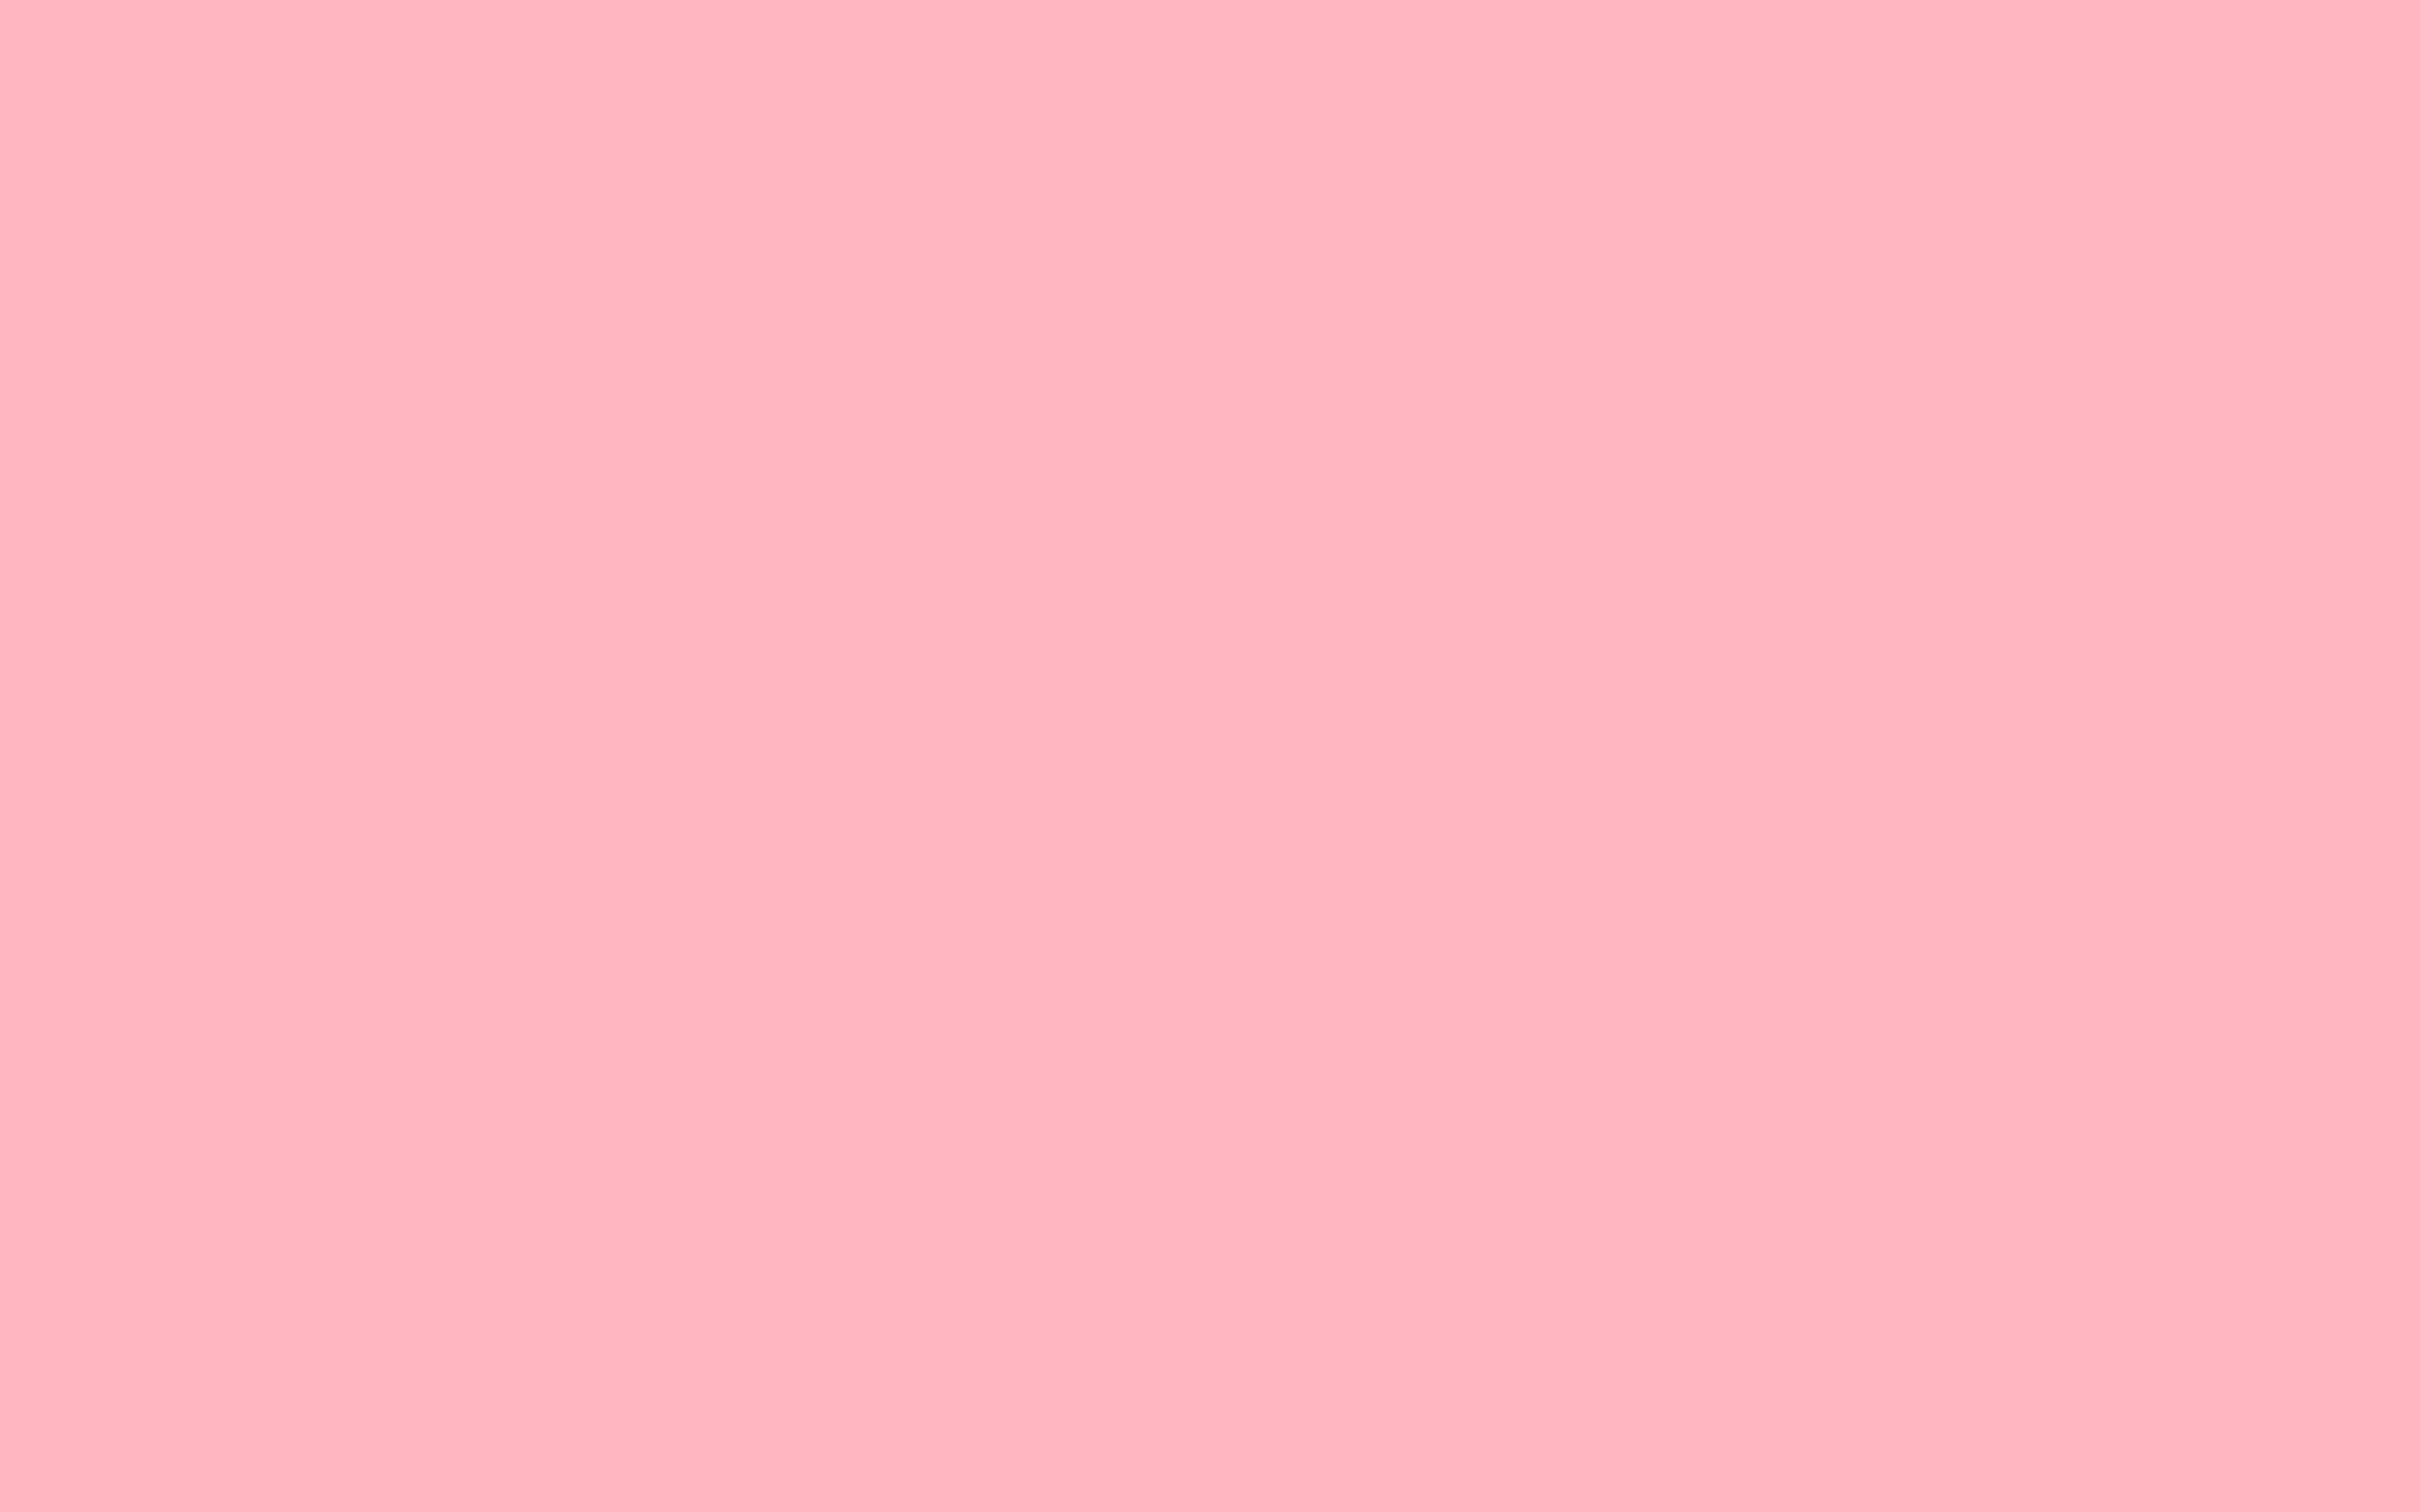 Tải ngay 777+ Pink backgrounds plain để mang đến sự tinh tế cho màn hình của bạn